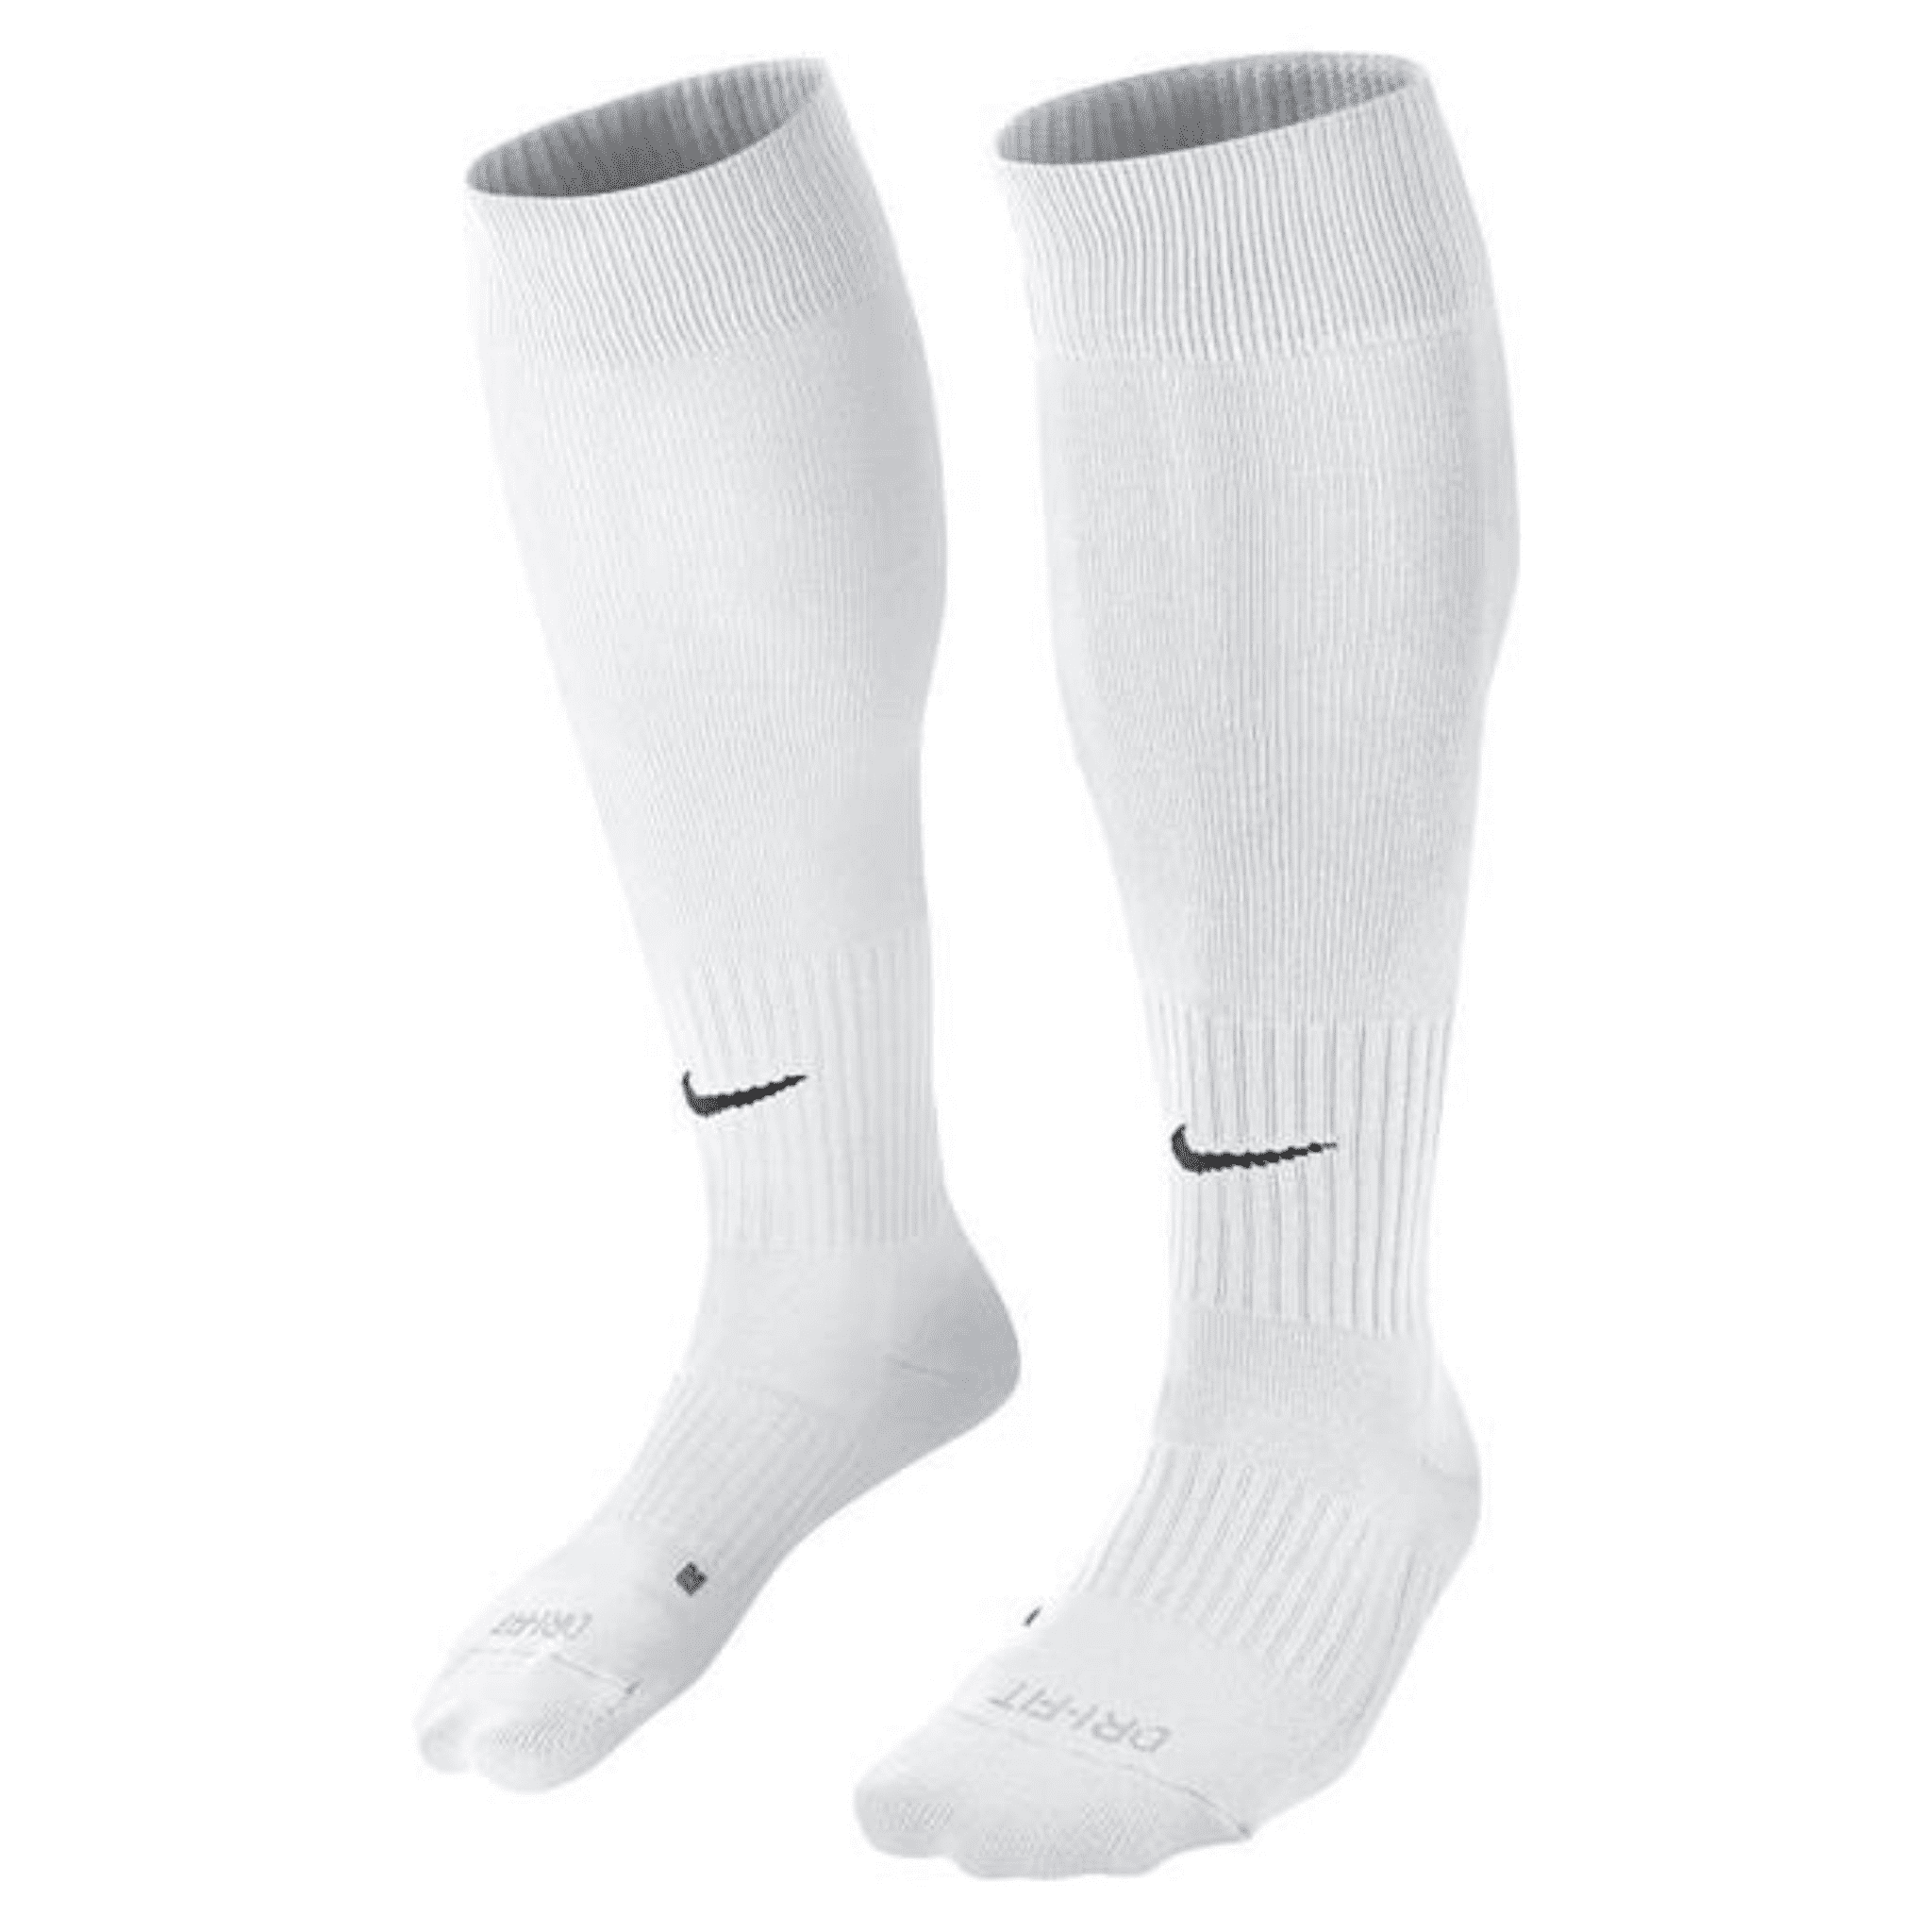 Nike Classic II White/Black Football Sock